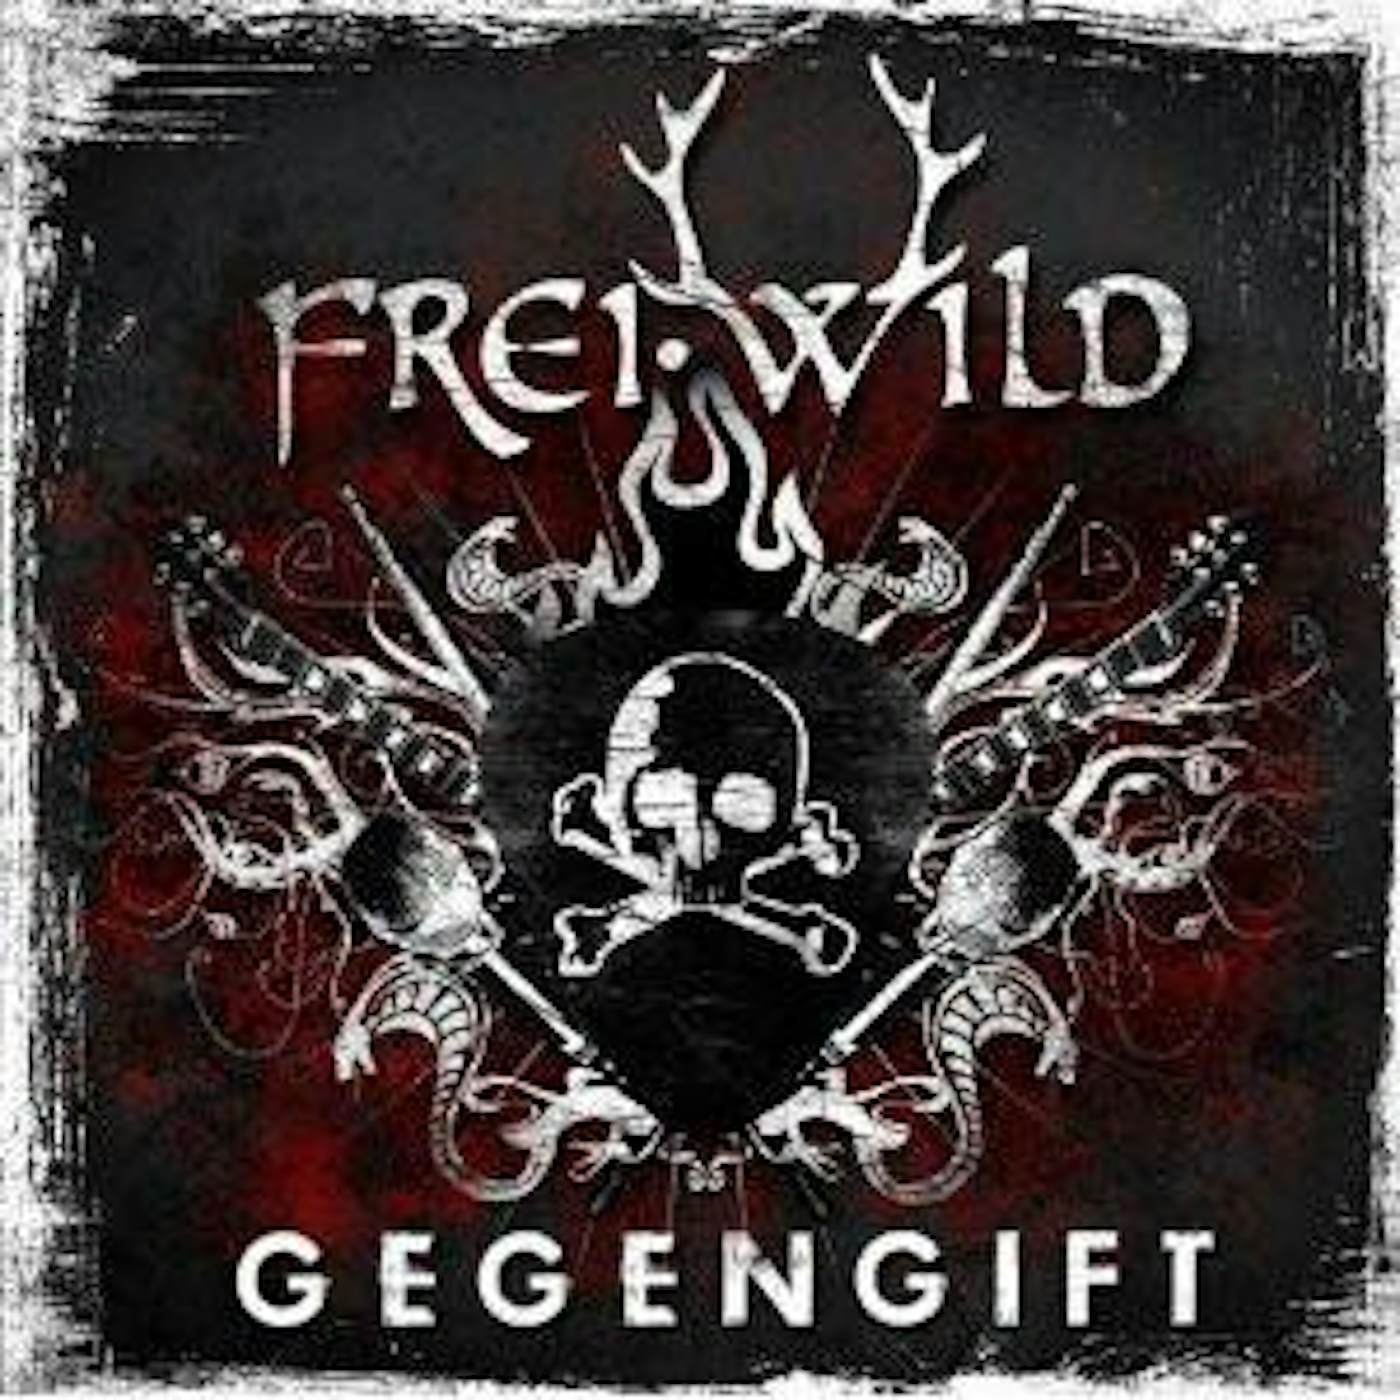 Frei.Wild GEGENGIFT CD